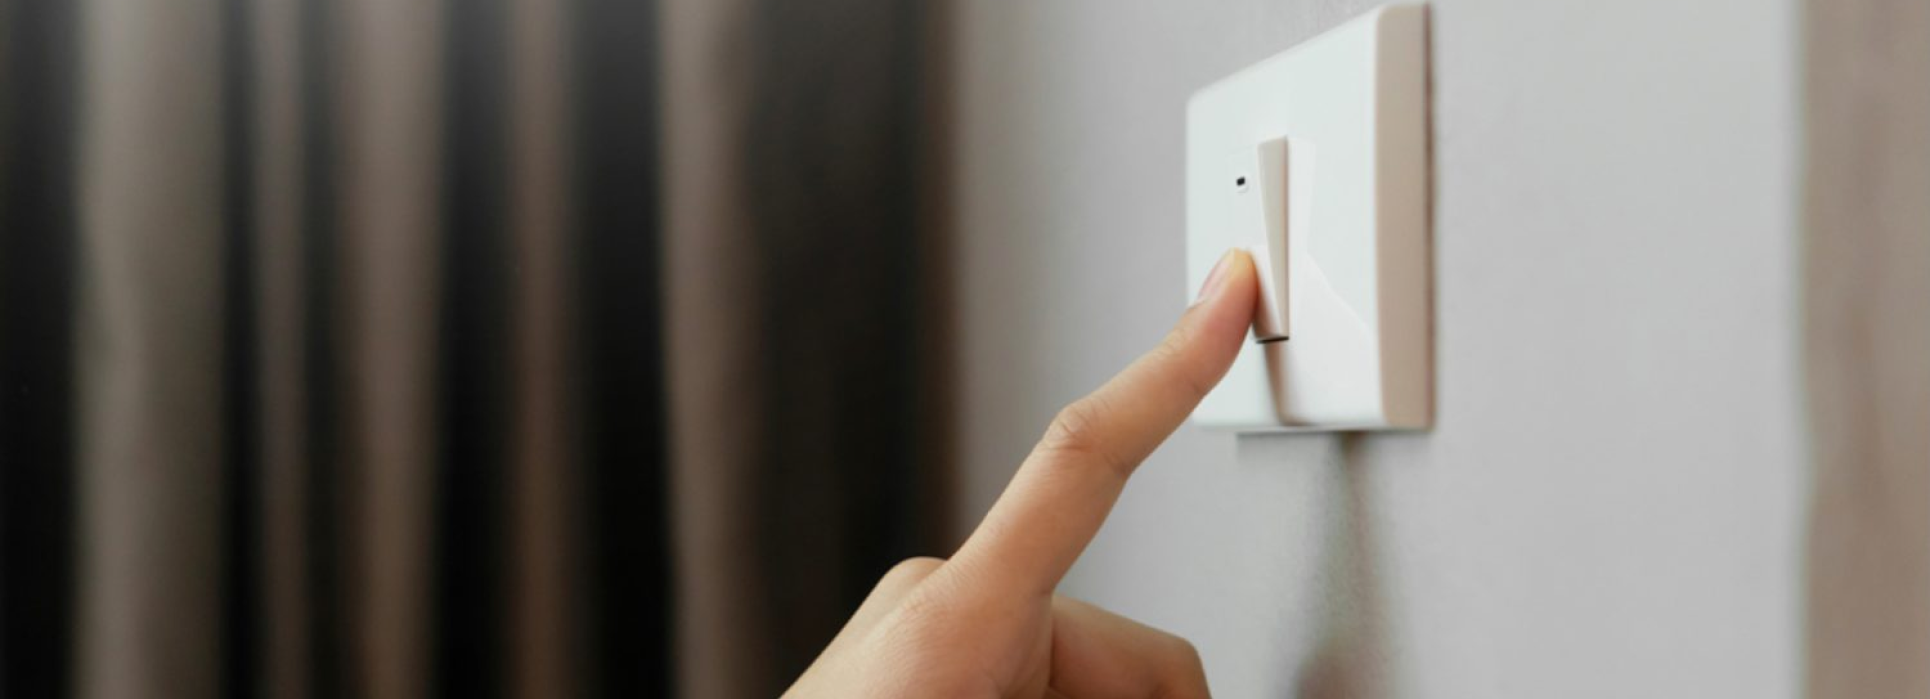 Melhor interruptor de luz HomeKit - interruptor de relé EVVR na parede